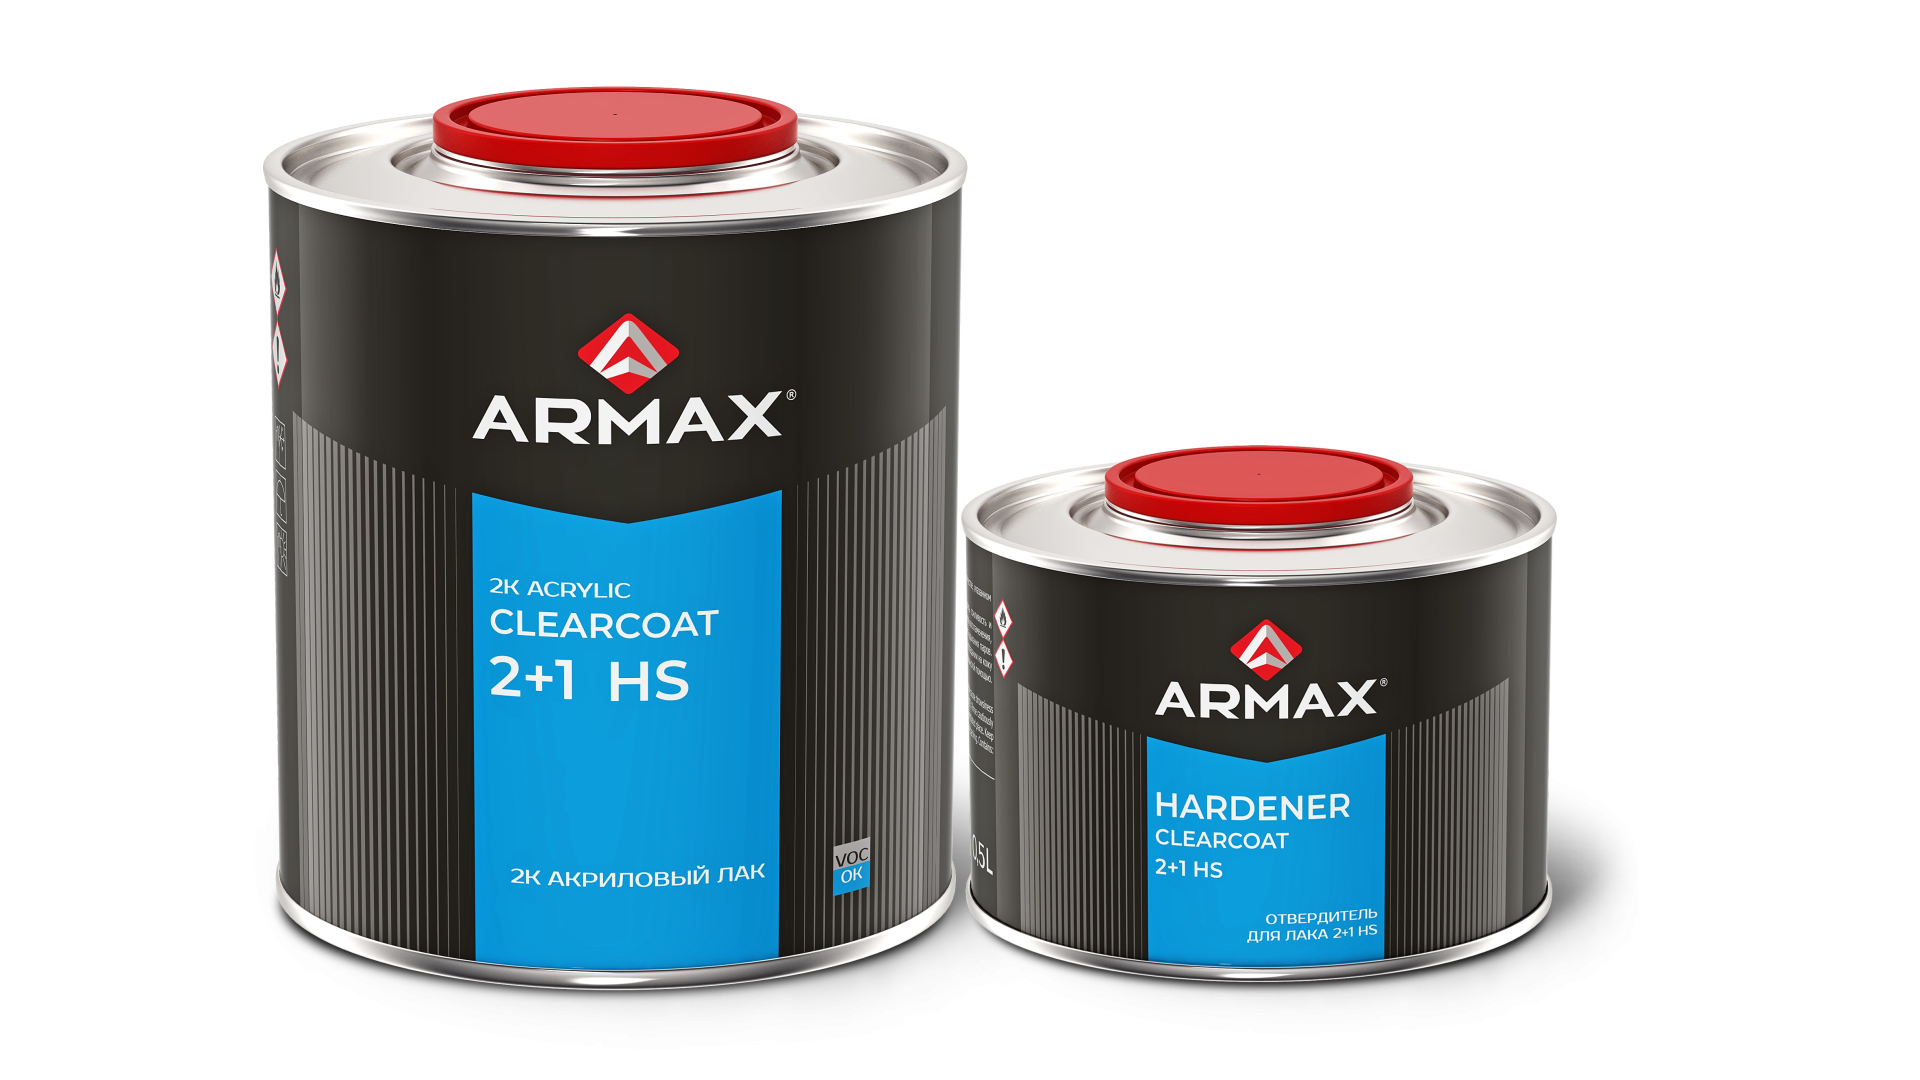 Новый продукт в линейке материалов Armax - 2К акриловый лак